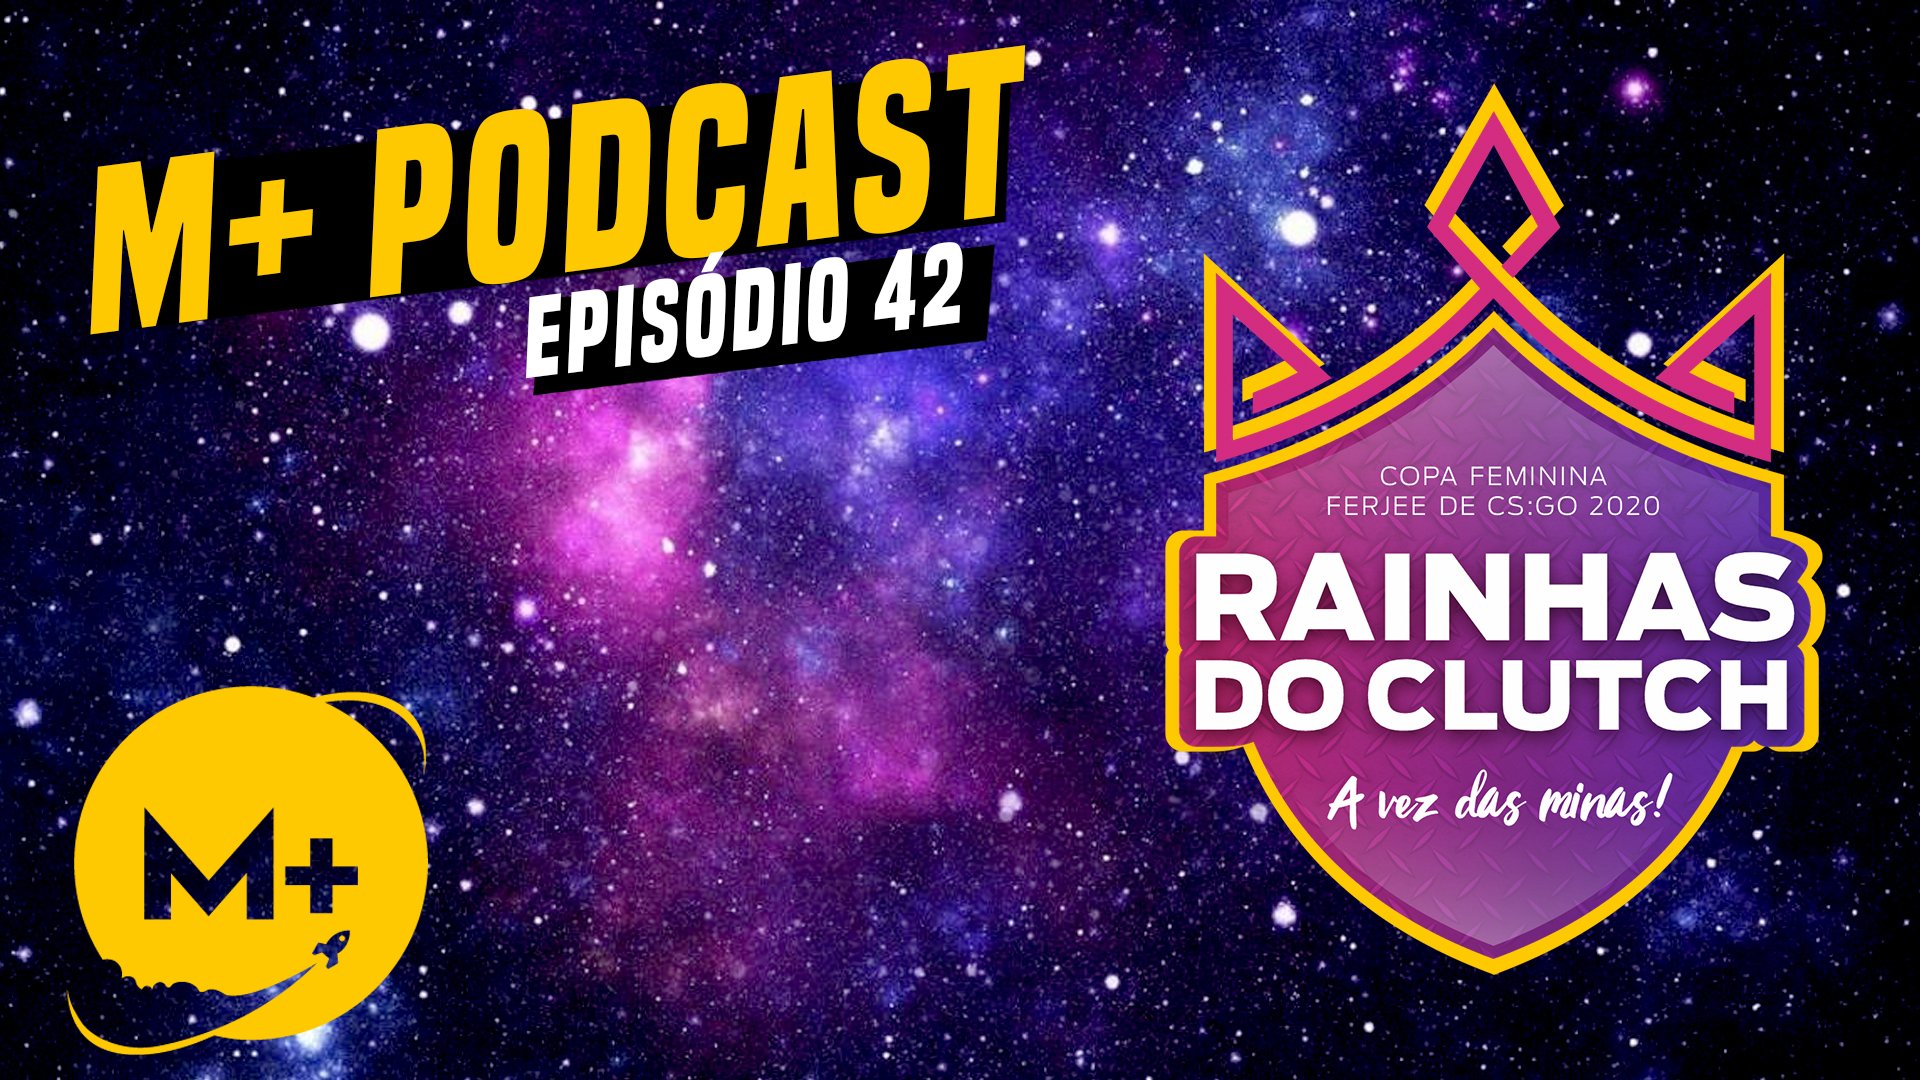 M+ Podcast 42: Rainhas do Clutch e o Cenário Feminino de CS:GO